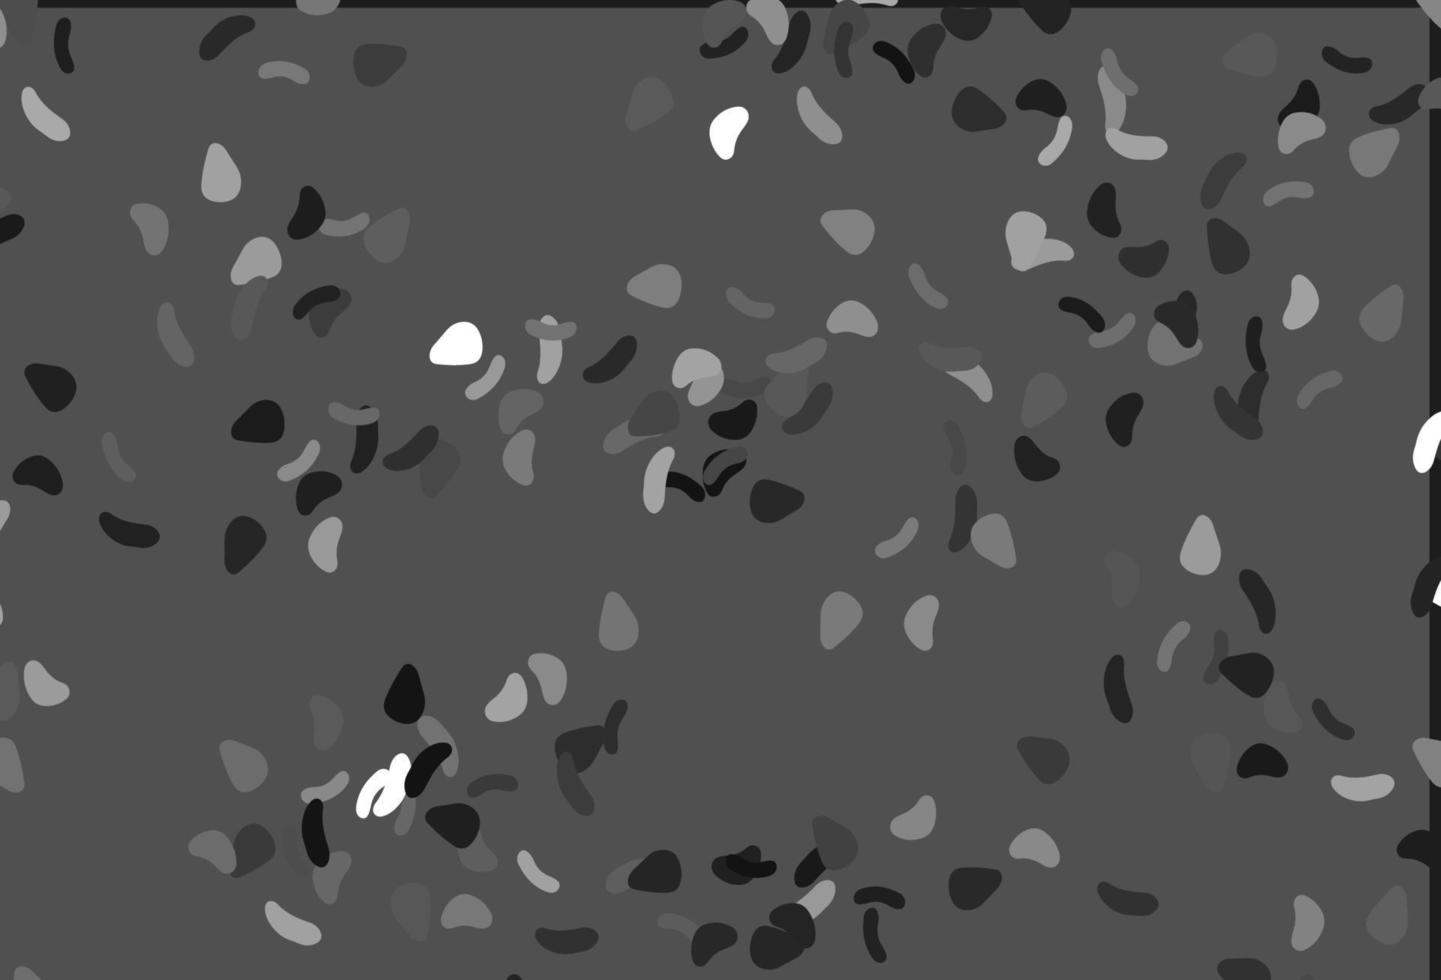 argent clair, motif vectoriel gris avec des formes chaotiques.